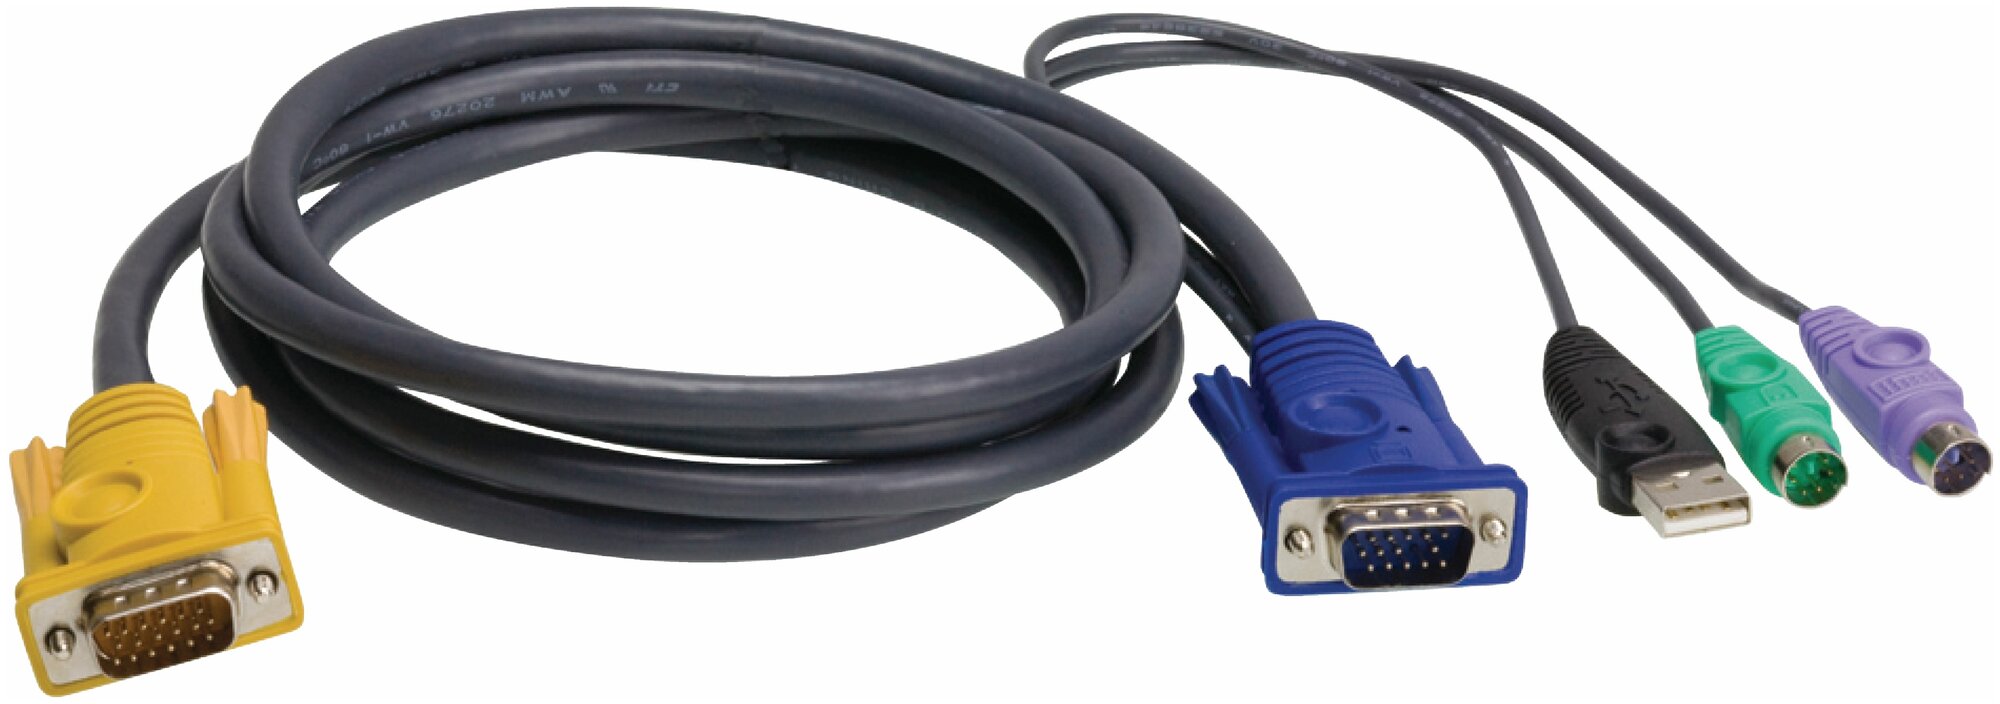 ATEN 2L-5303UP Шнур, мон, клав.+мышь USB, SPHD=>HD DB15+USB A-Тип+2x6MINI-DIN, Male-4xMale, 8+8 проводов, опрессованный, 3 метр, черный, (с поддерKой KVM PS/2) 2L-5303UP